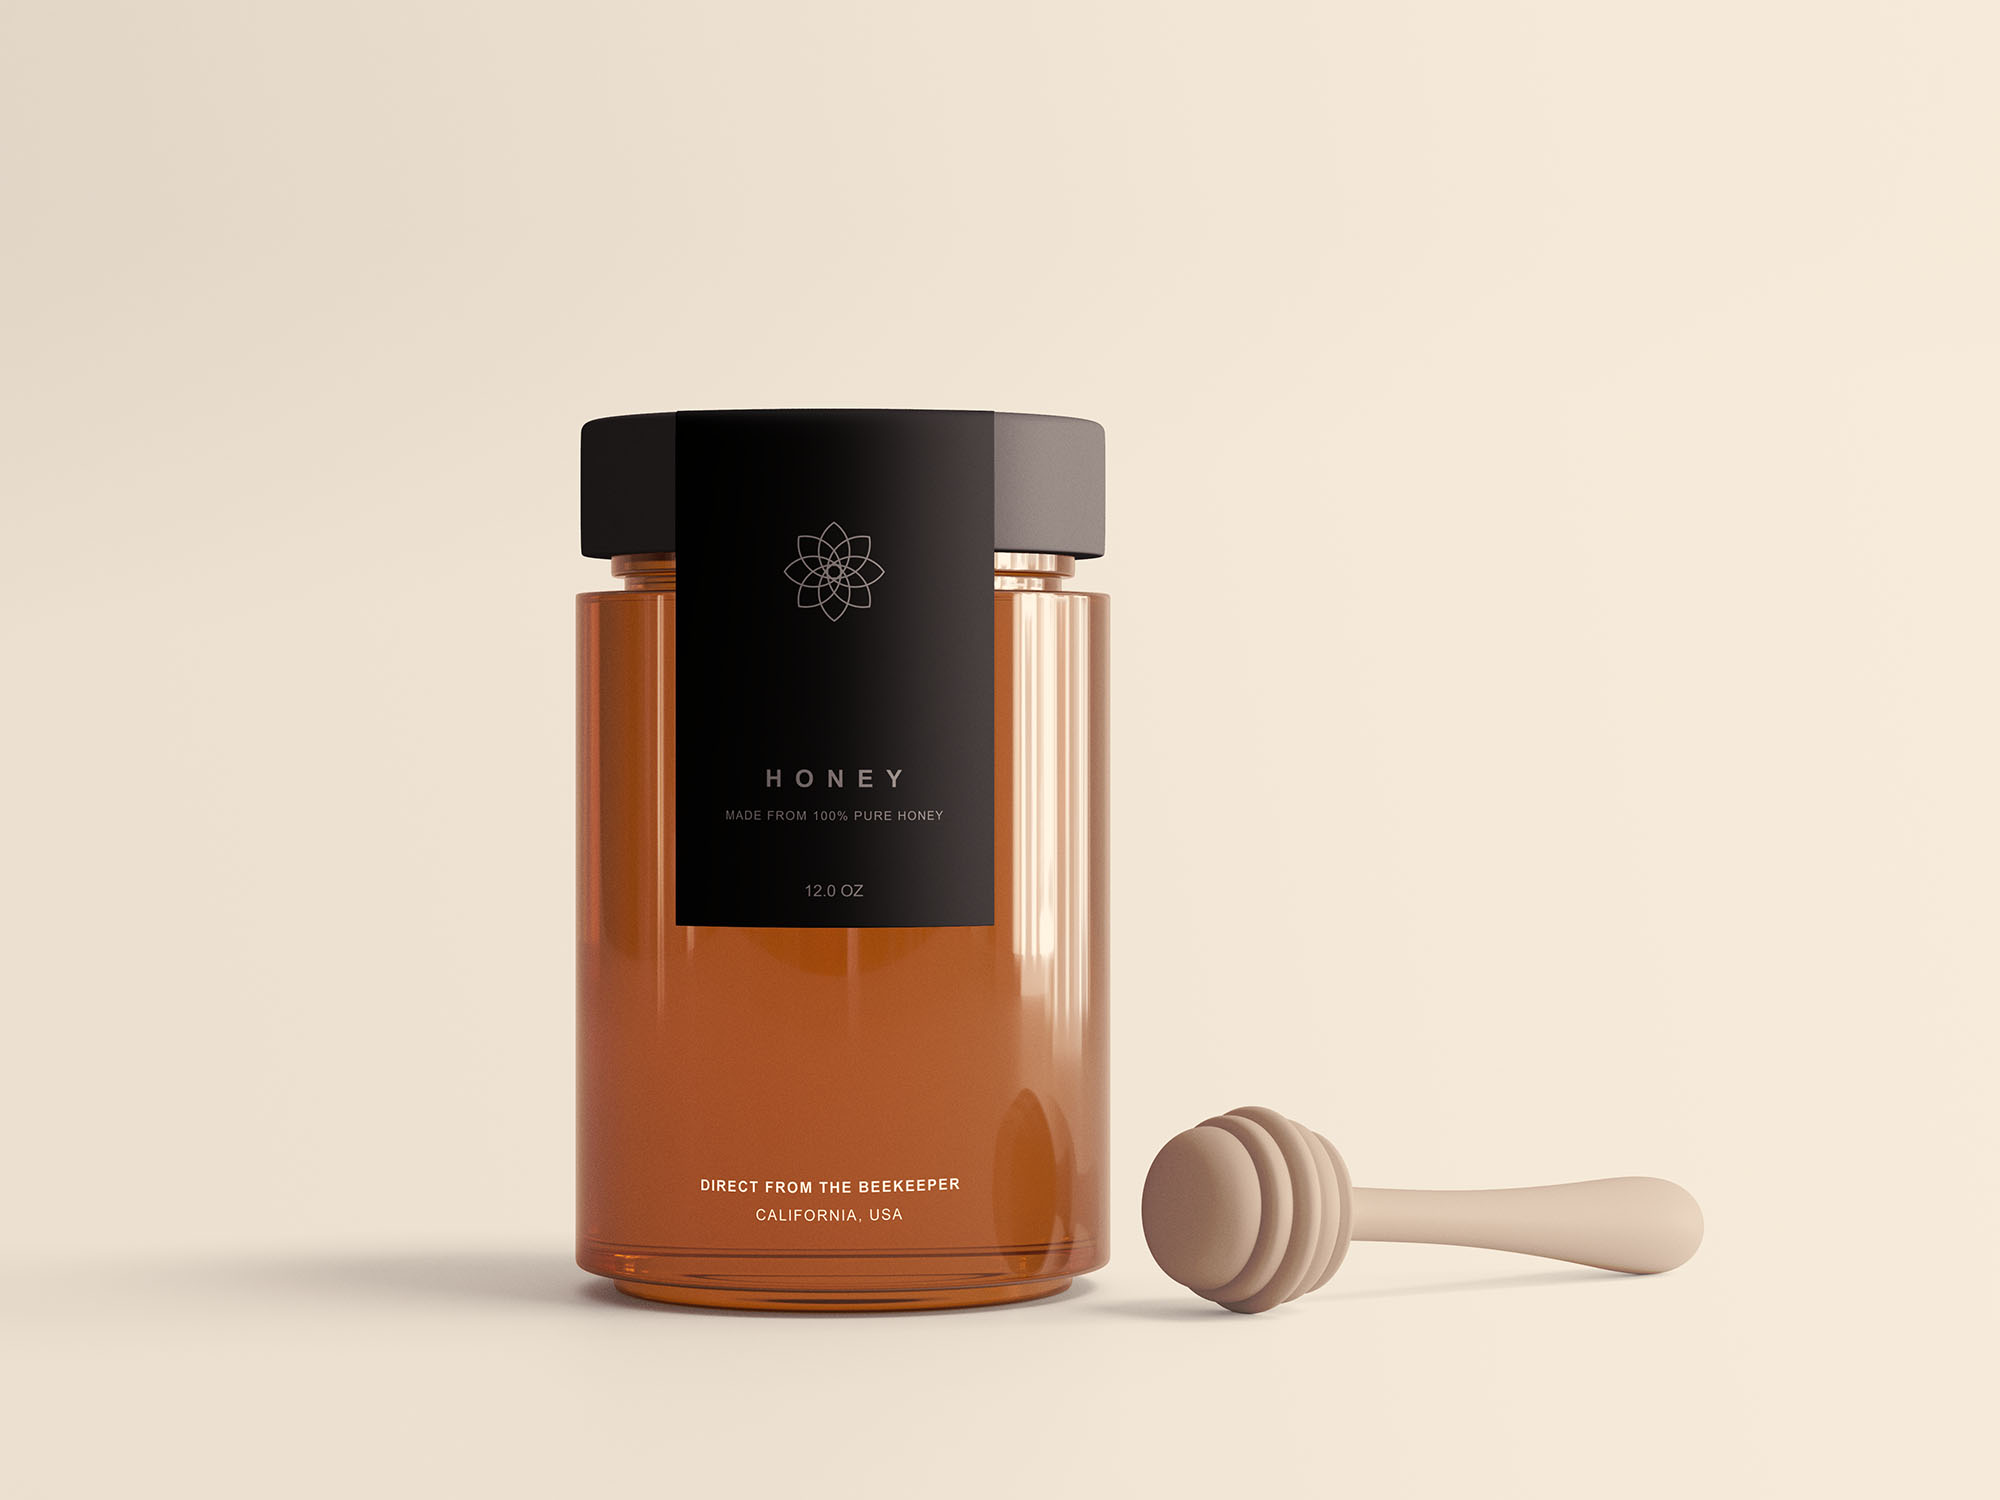 透明蜂蜜玻璃罐包装样机模型Honey Jar Package Mockup .psd素材